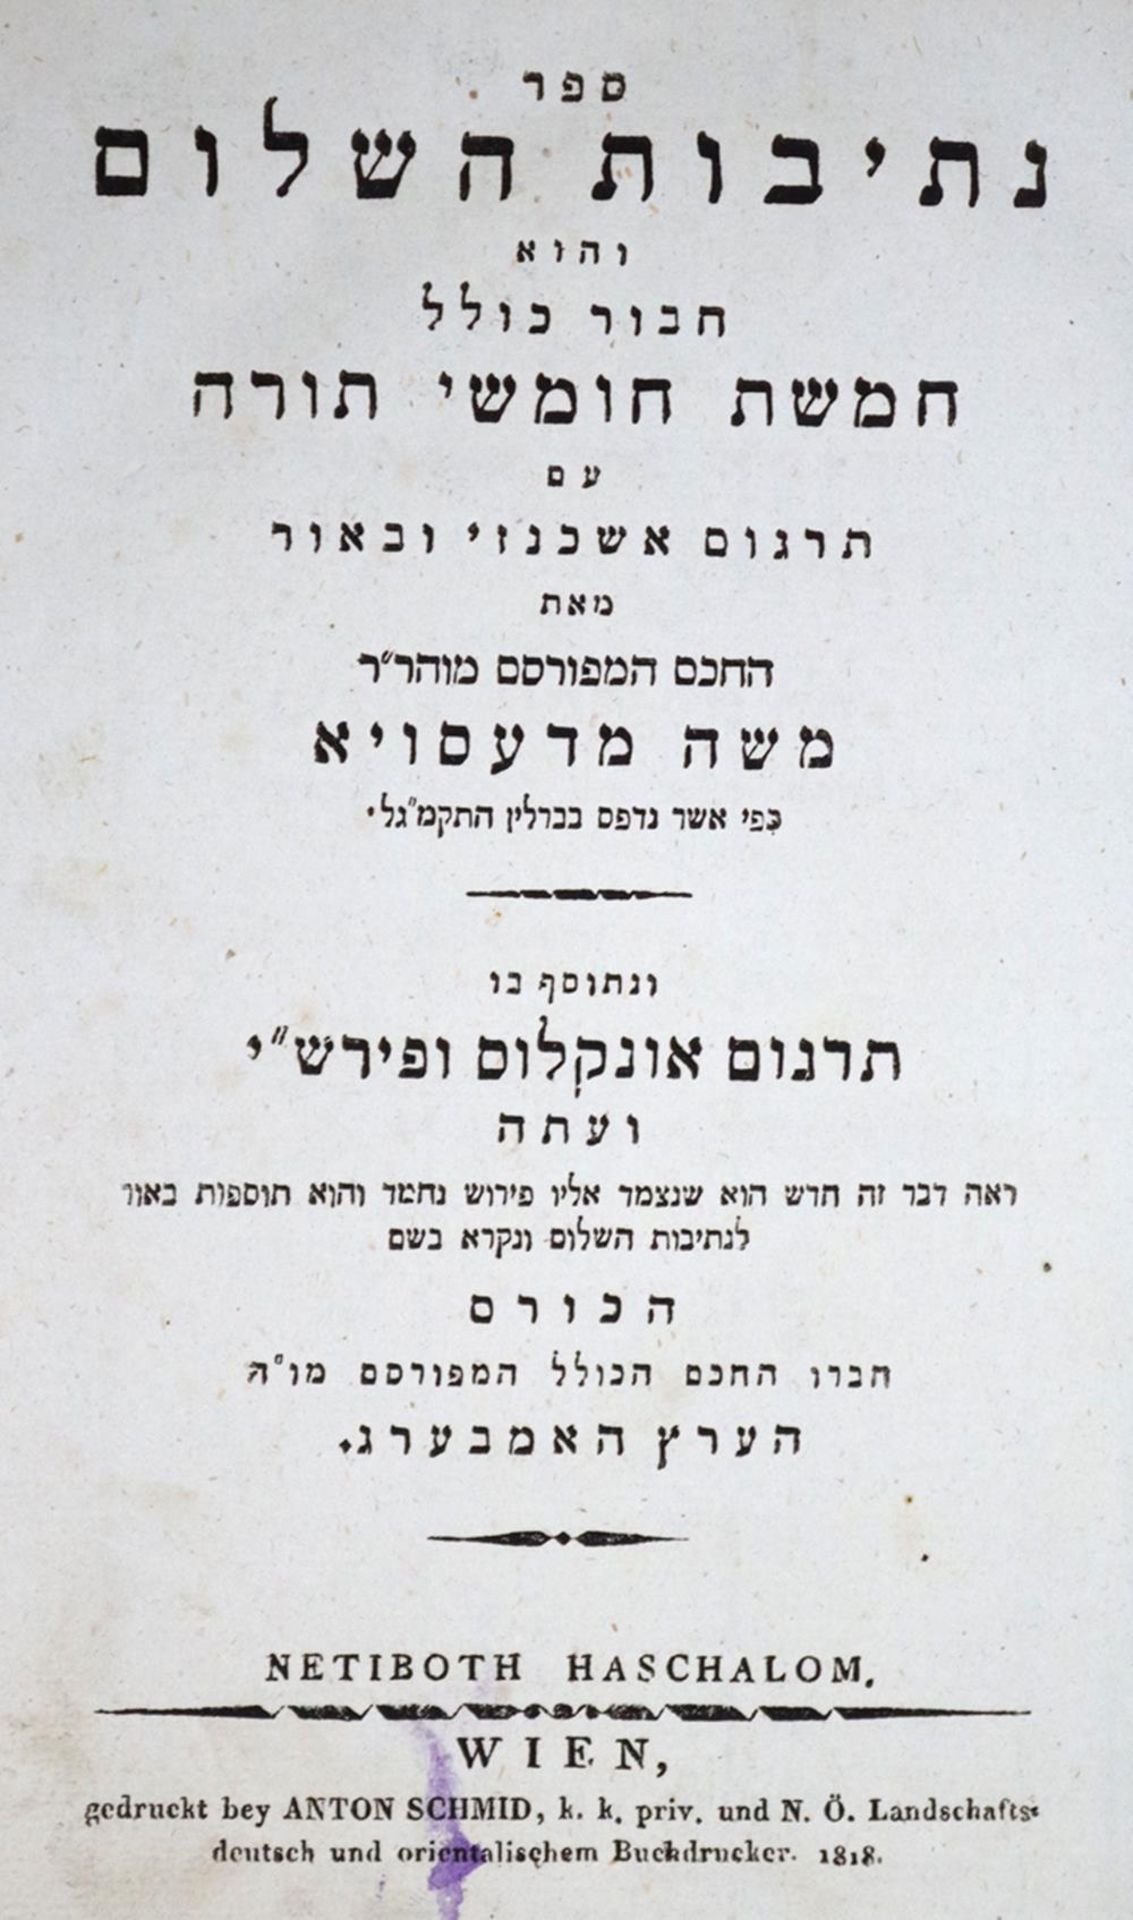 Sefer torahSefer torah nebiim uketubim: = Hebrew Bible (1882). Wien, Holzhausen 1882. 1Sefe